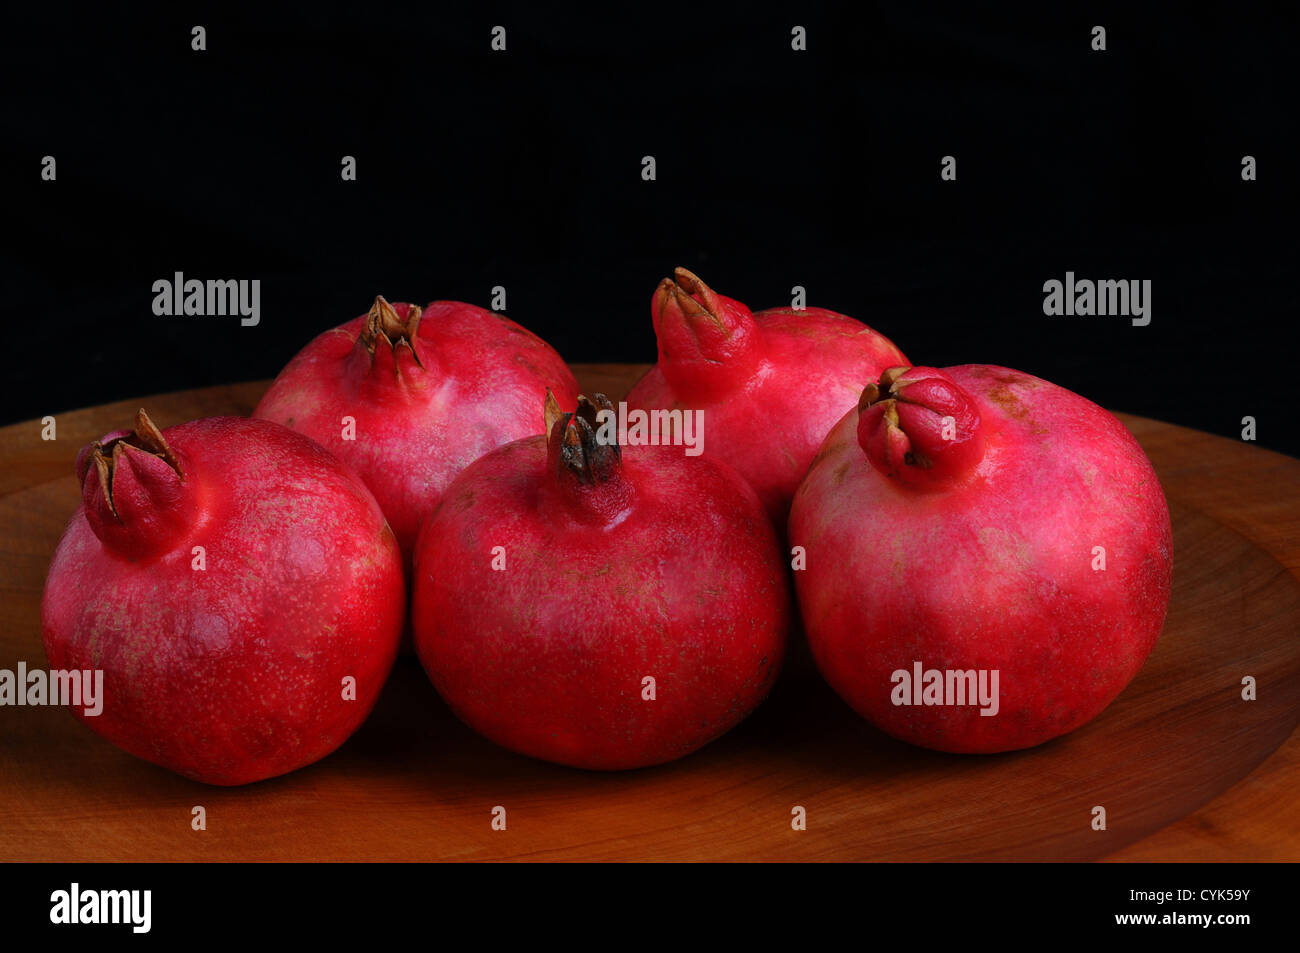 Nahaufnahme von fünf Granatäpfel auf einer hölzernen Platte und einem schwarzen Hintergrund. Querformat. Stockfoto